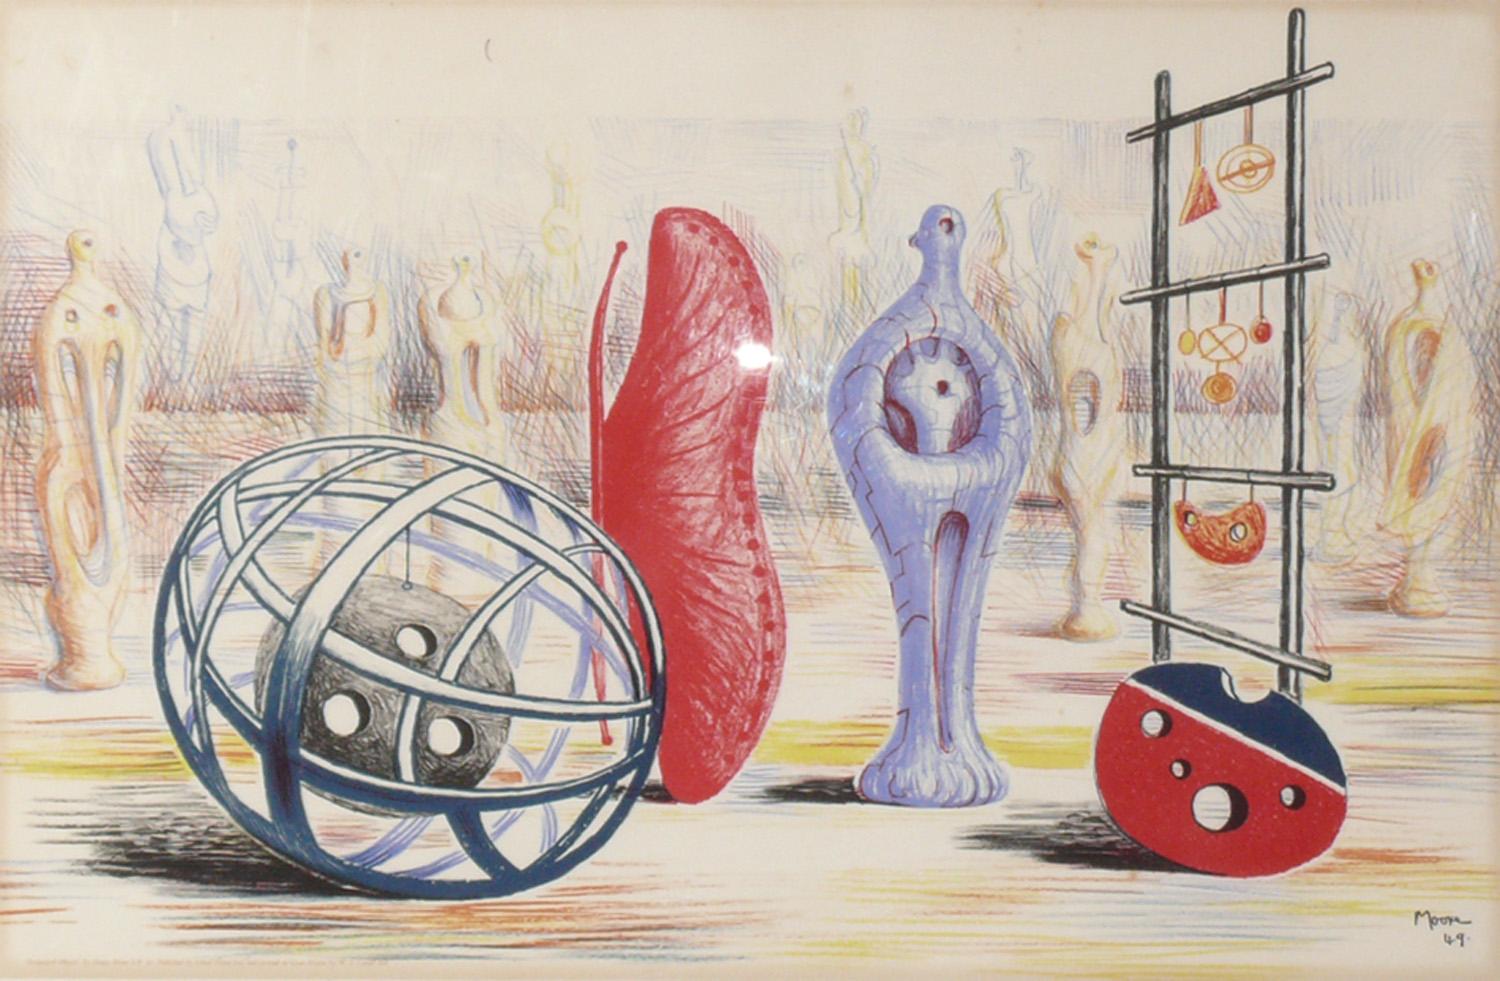 Lithographie d'Henry Moore, intitulée Objets sculpturaux, vers 1949. Récemment encadré professionnellement sous verre résistant aux UV. Signature imprimée, titre et date dans la marge inférieure 'Sculptural Objects by Henry Moore S.P. 30, published